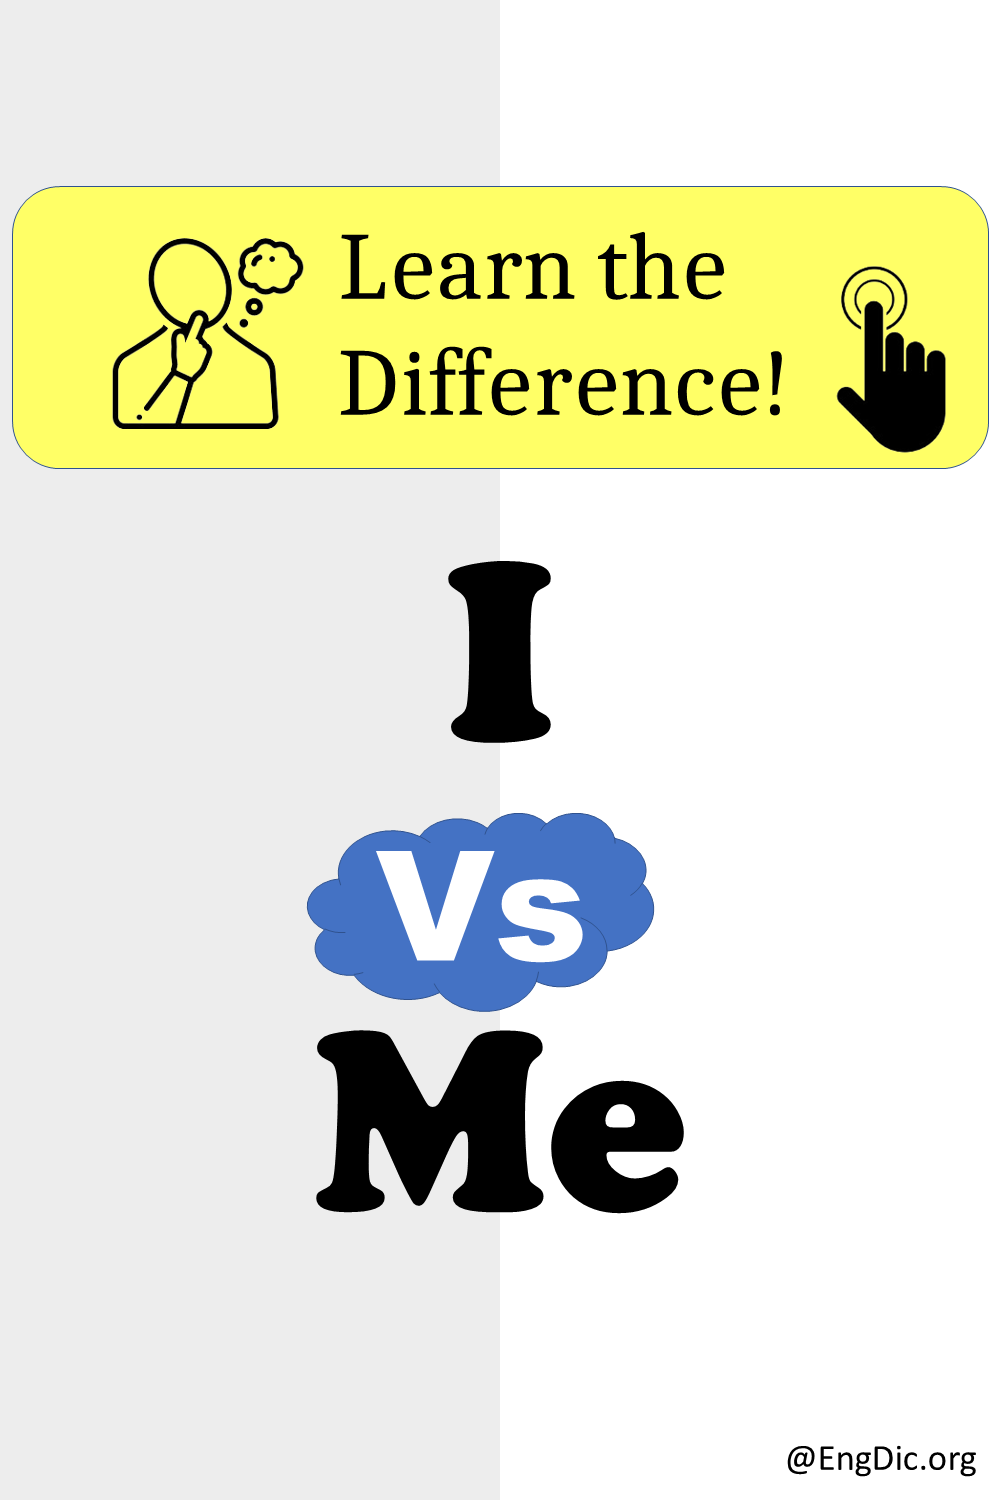 I vs Me